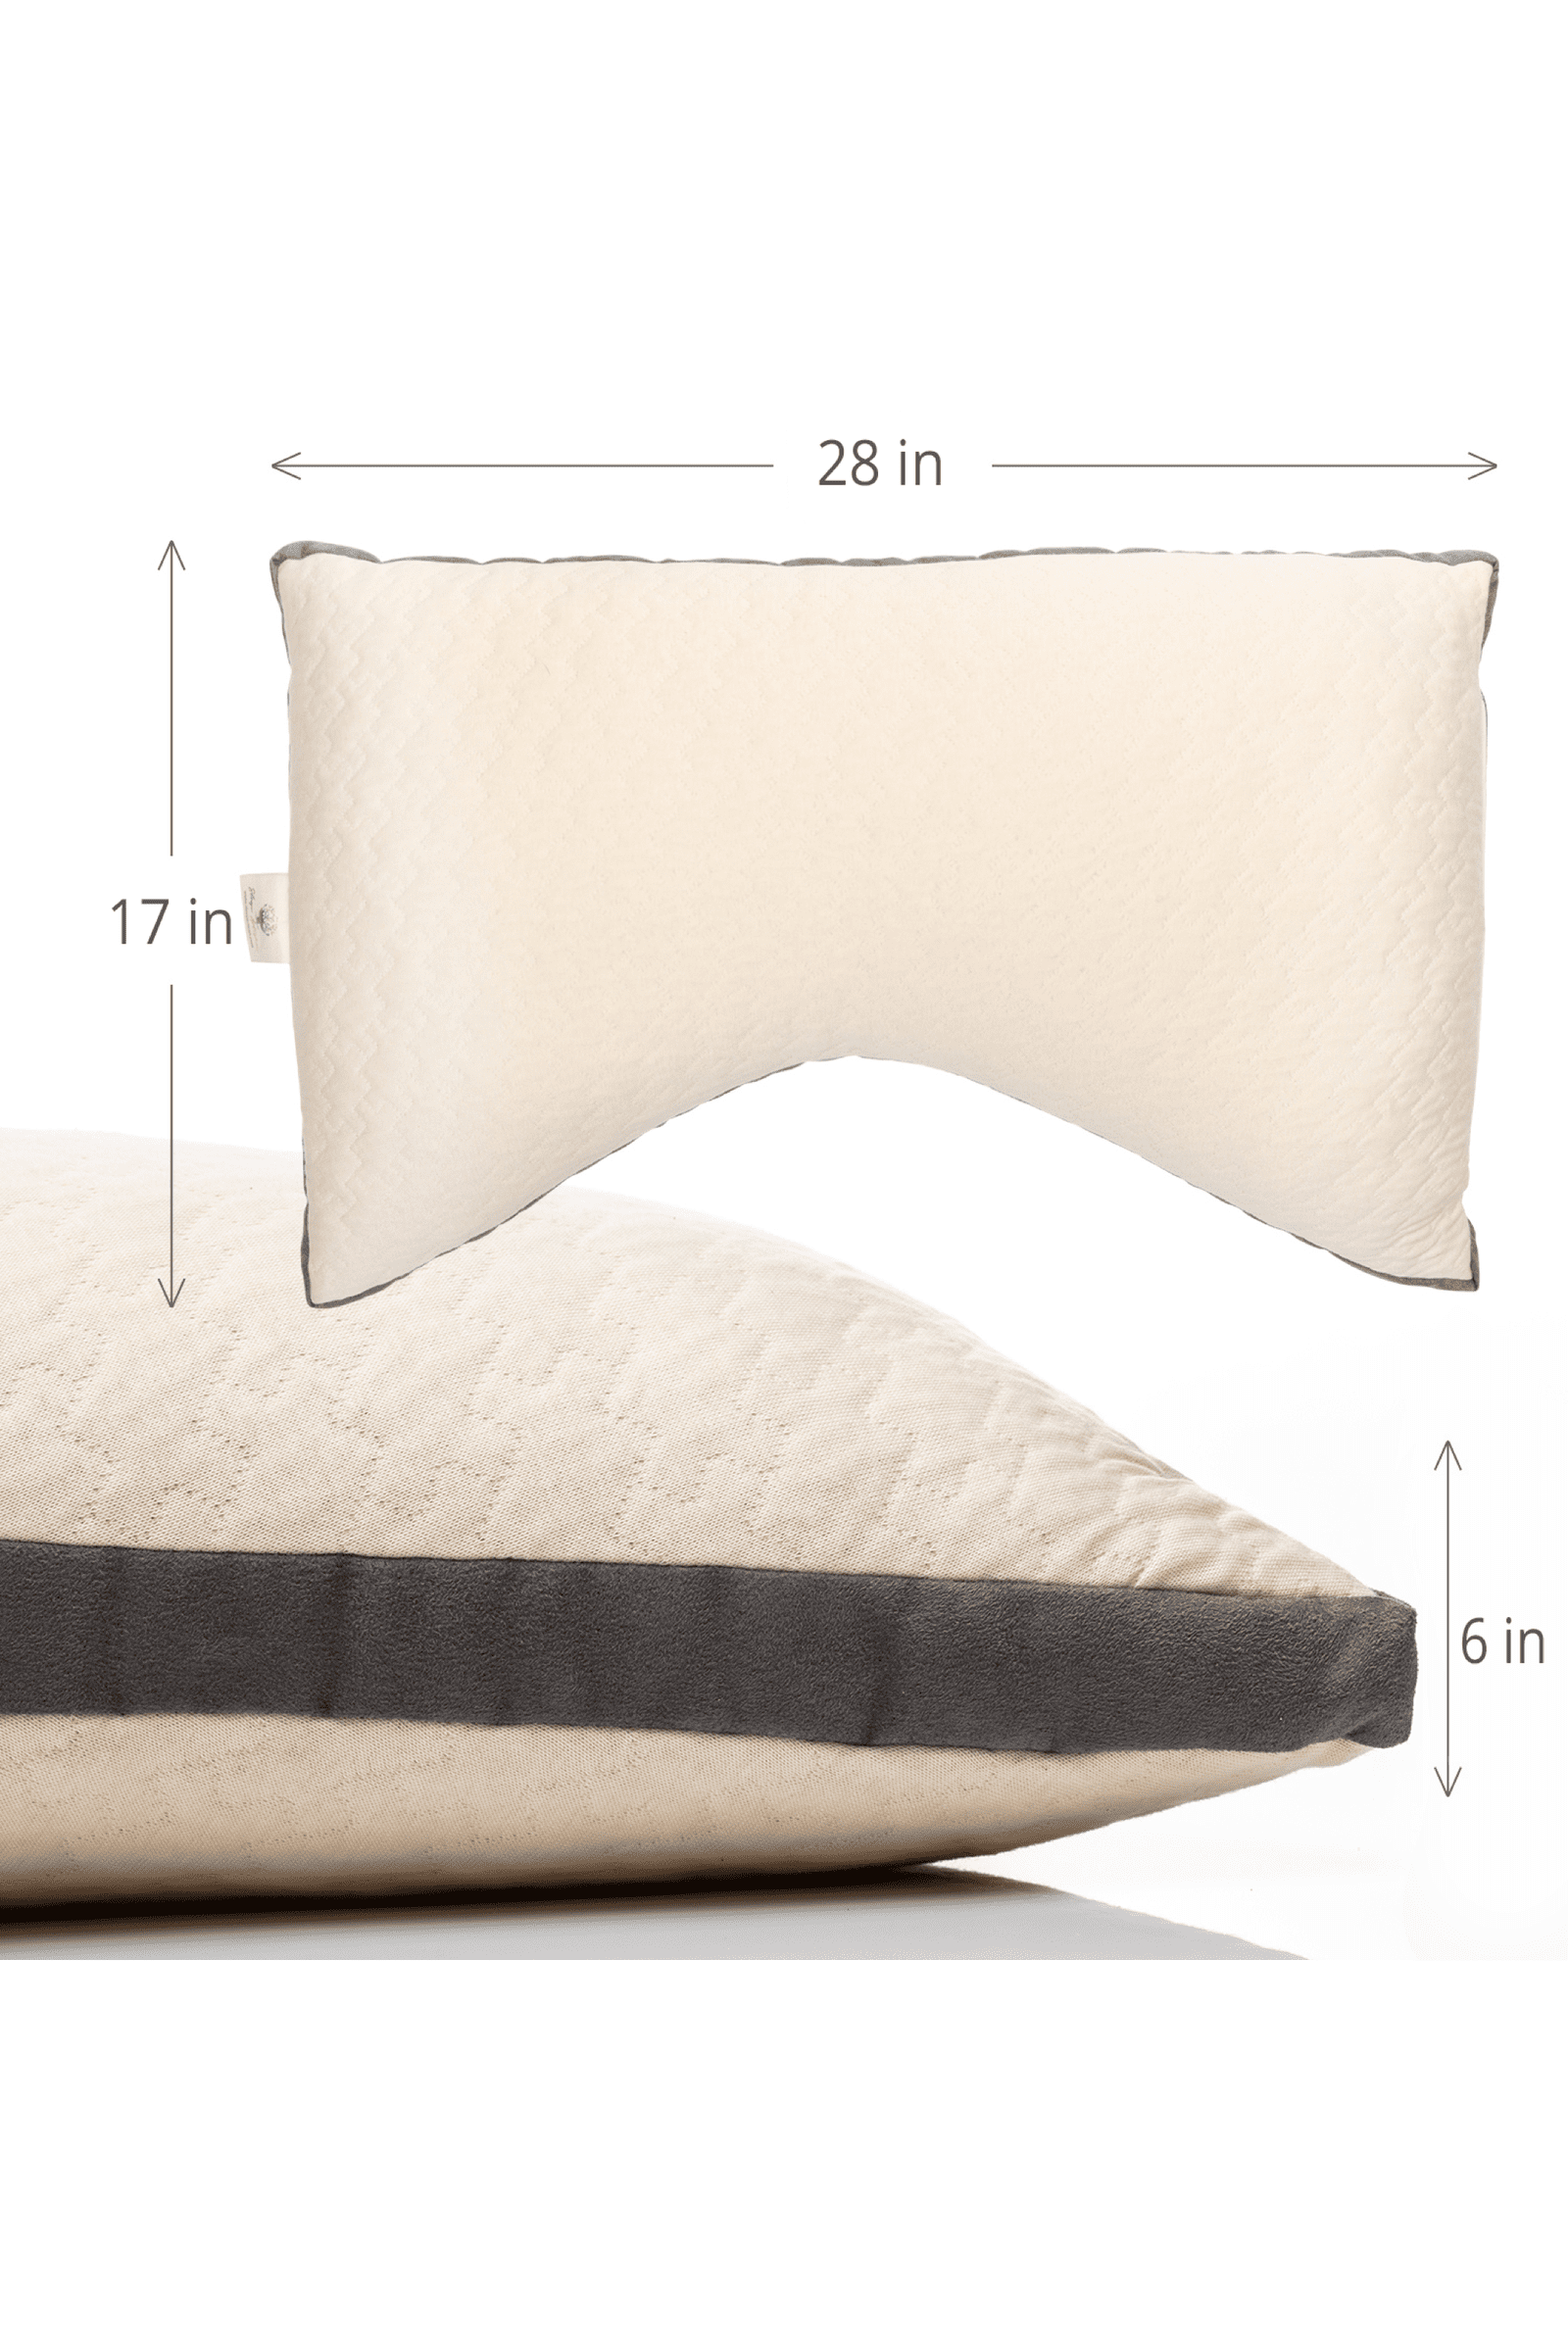 Organic Cotton and Kapok Decorative Pillow Inserts